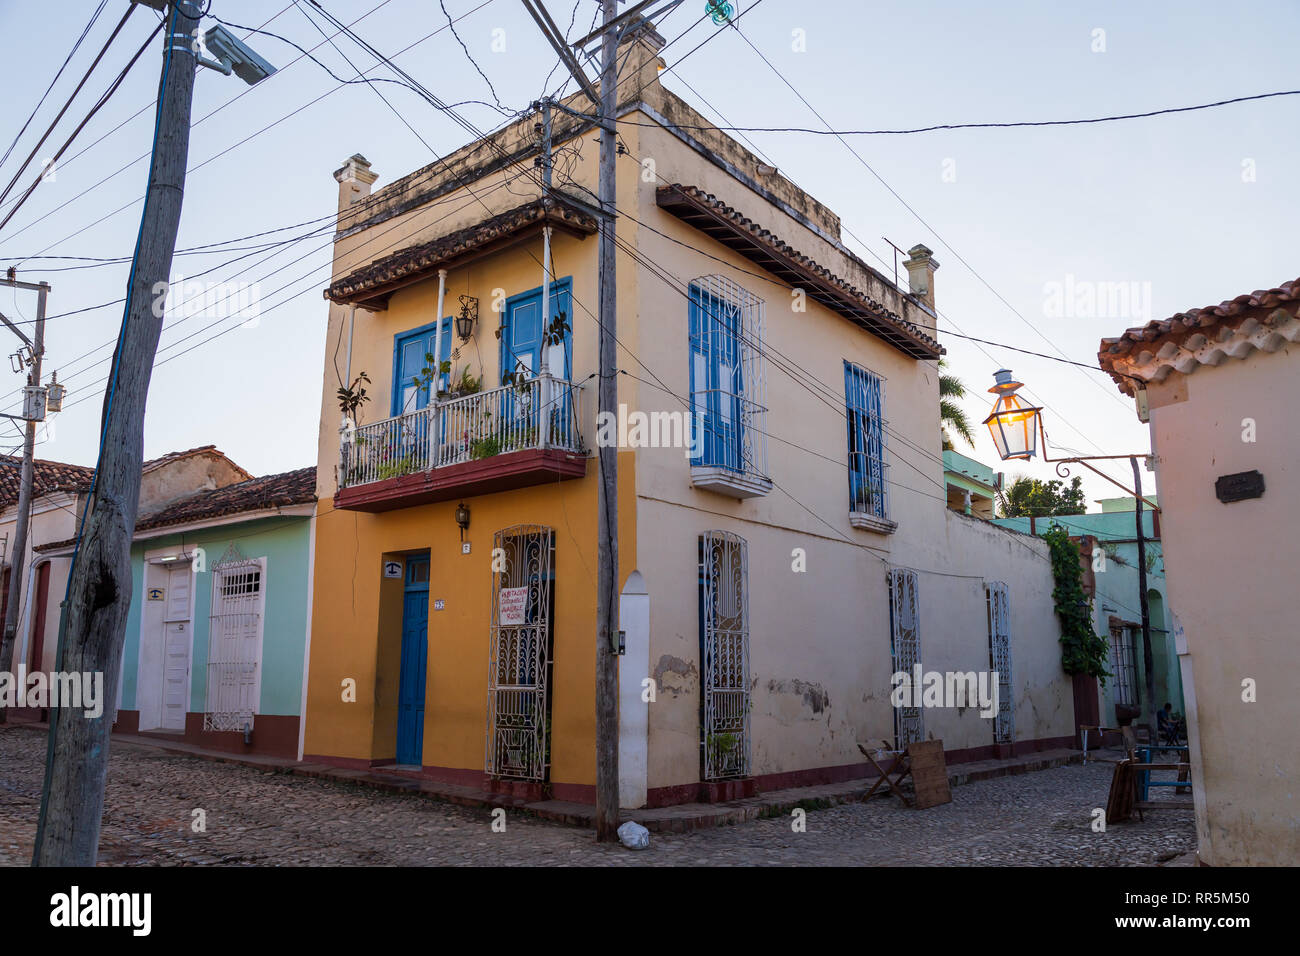 Ein typisch kubanisches Haus mit bunten Farben und blauen Fenstern und Kabel an der Ecke der Straße mit einem Schild Verfügbare Zimmer in Trinidad, Kuba Stockfoto